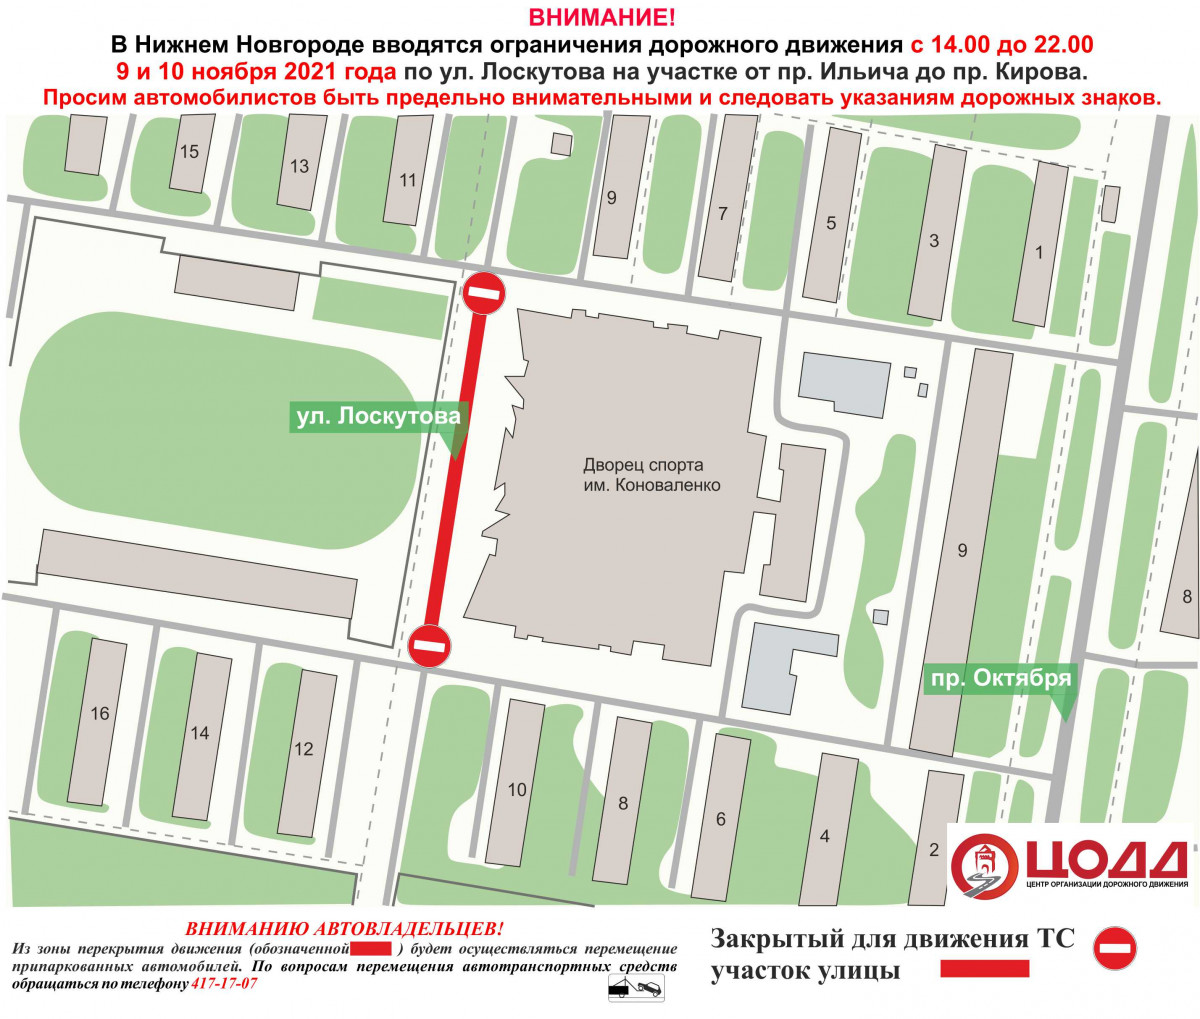 Движение транспорта приостановят на улице Лоскутова 9 и 10 ноября